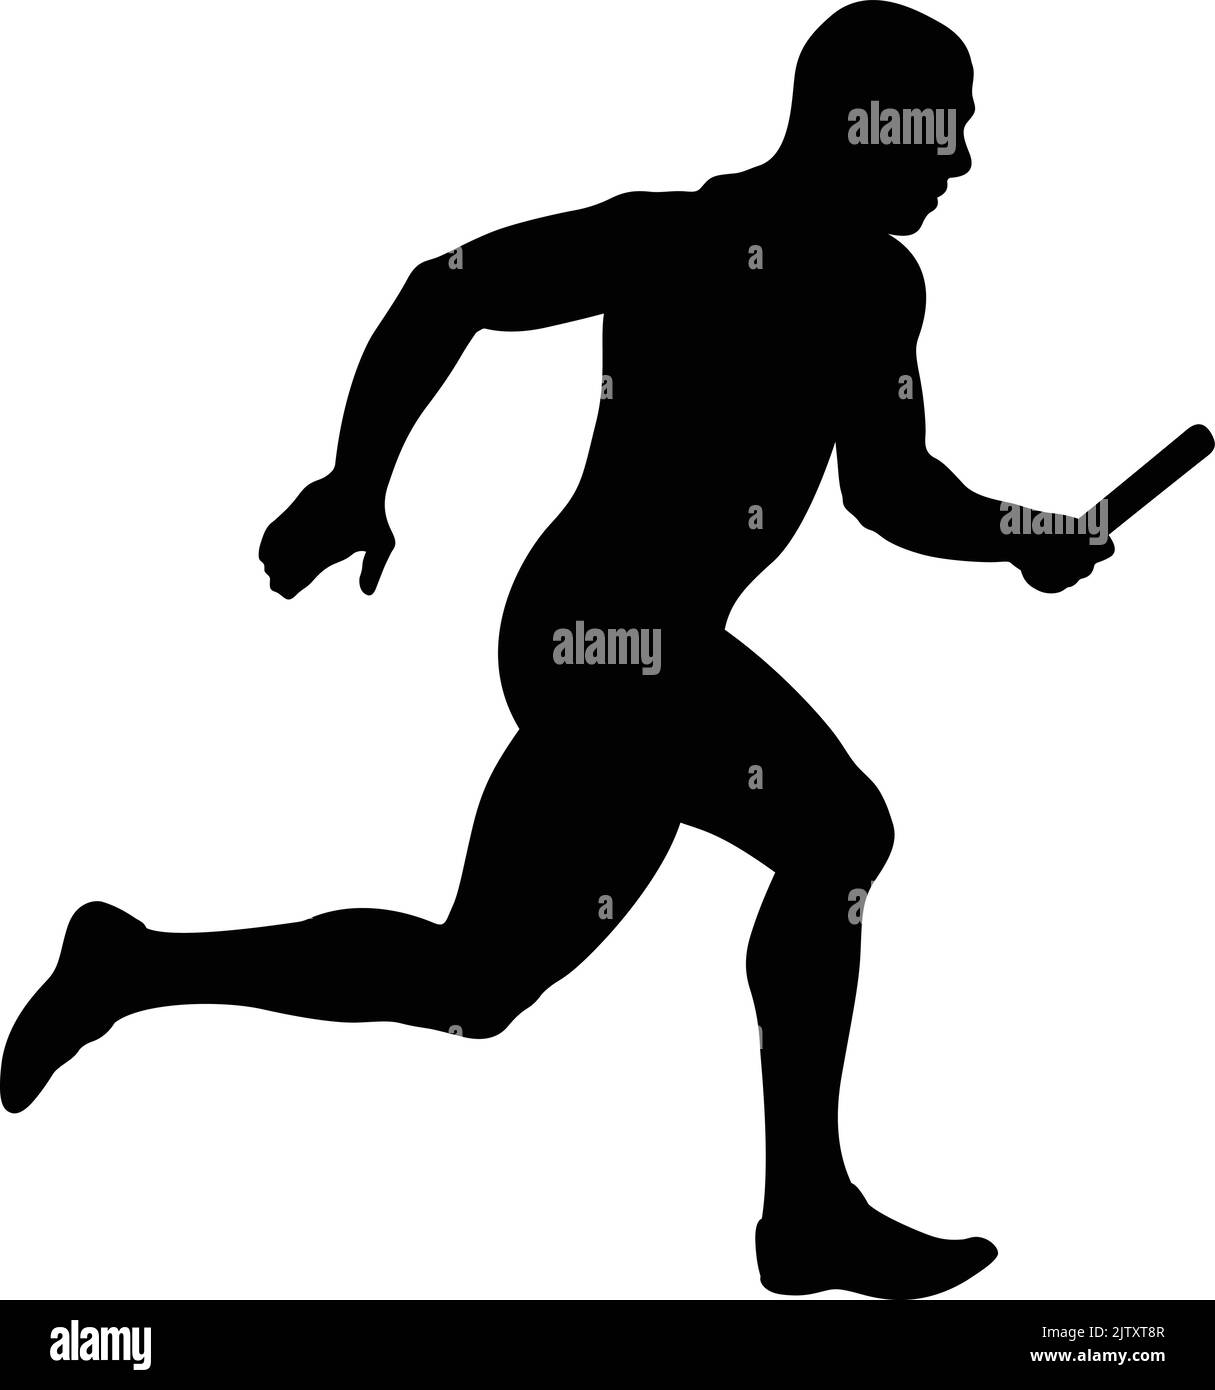 Athlet Runner Running Staffellauf Rennen schwarz Silhouette Stock Vektor